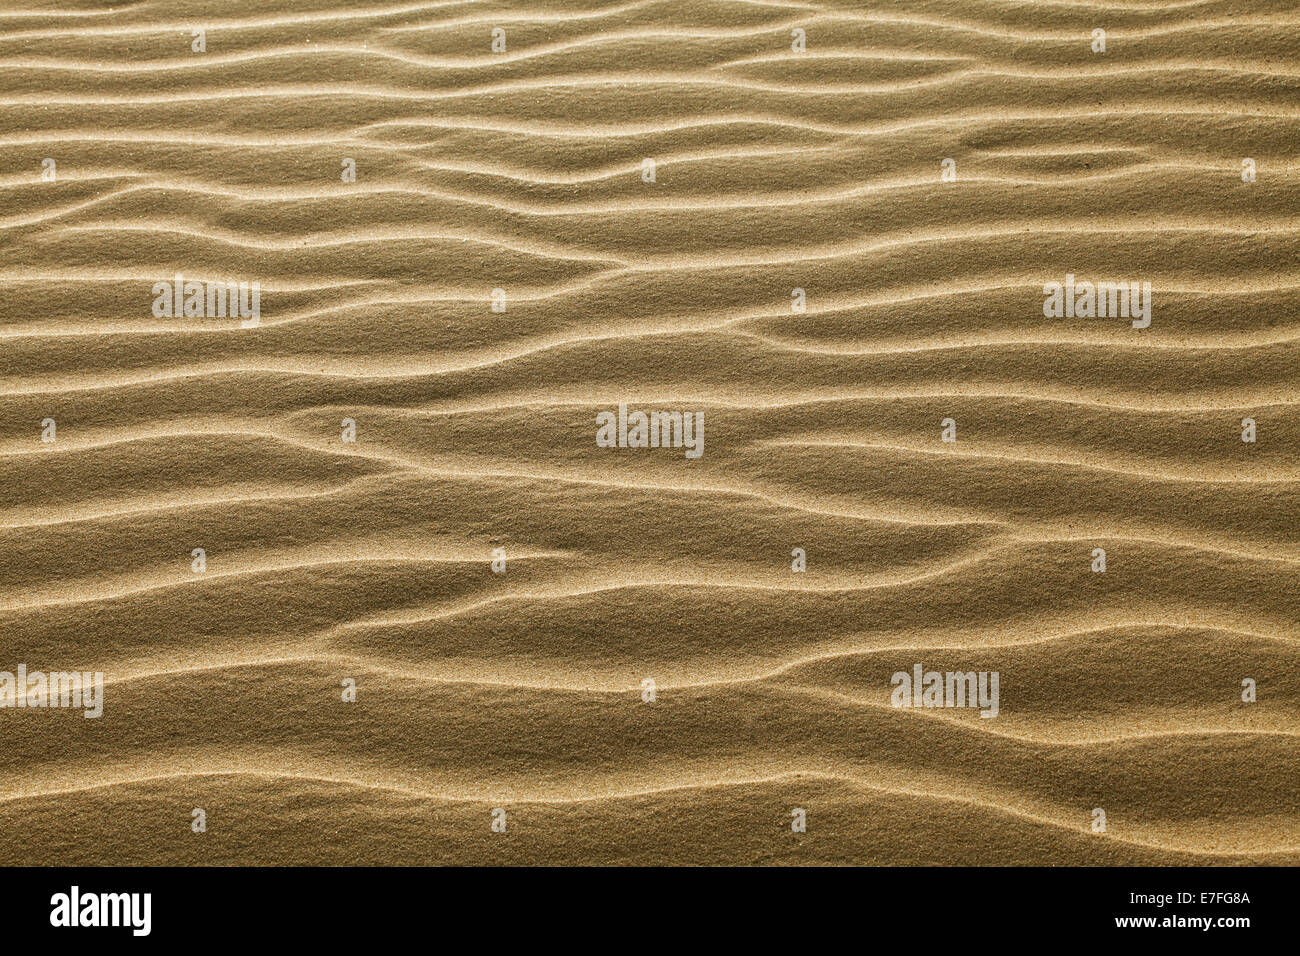 La consistenza della sabbia increspata con il vento Foto Stock